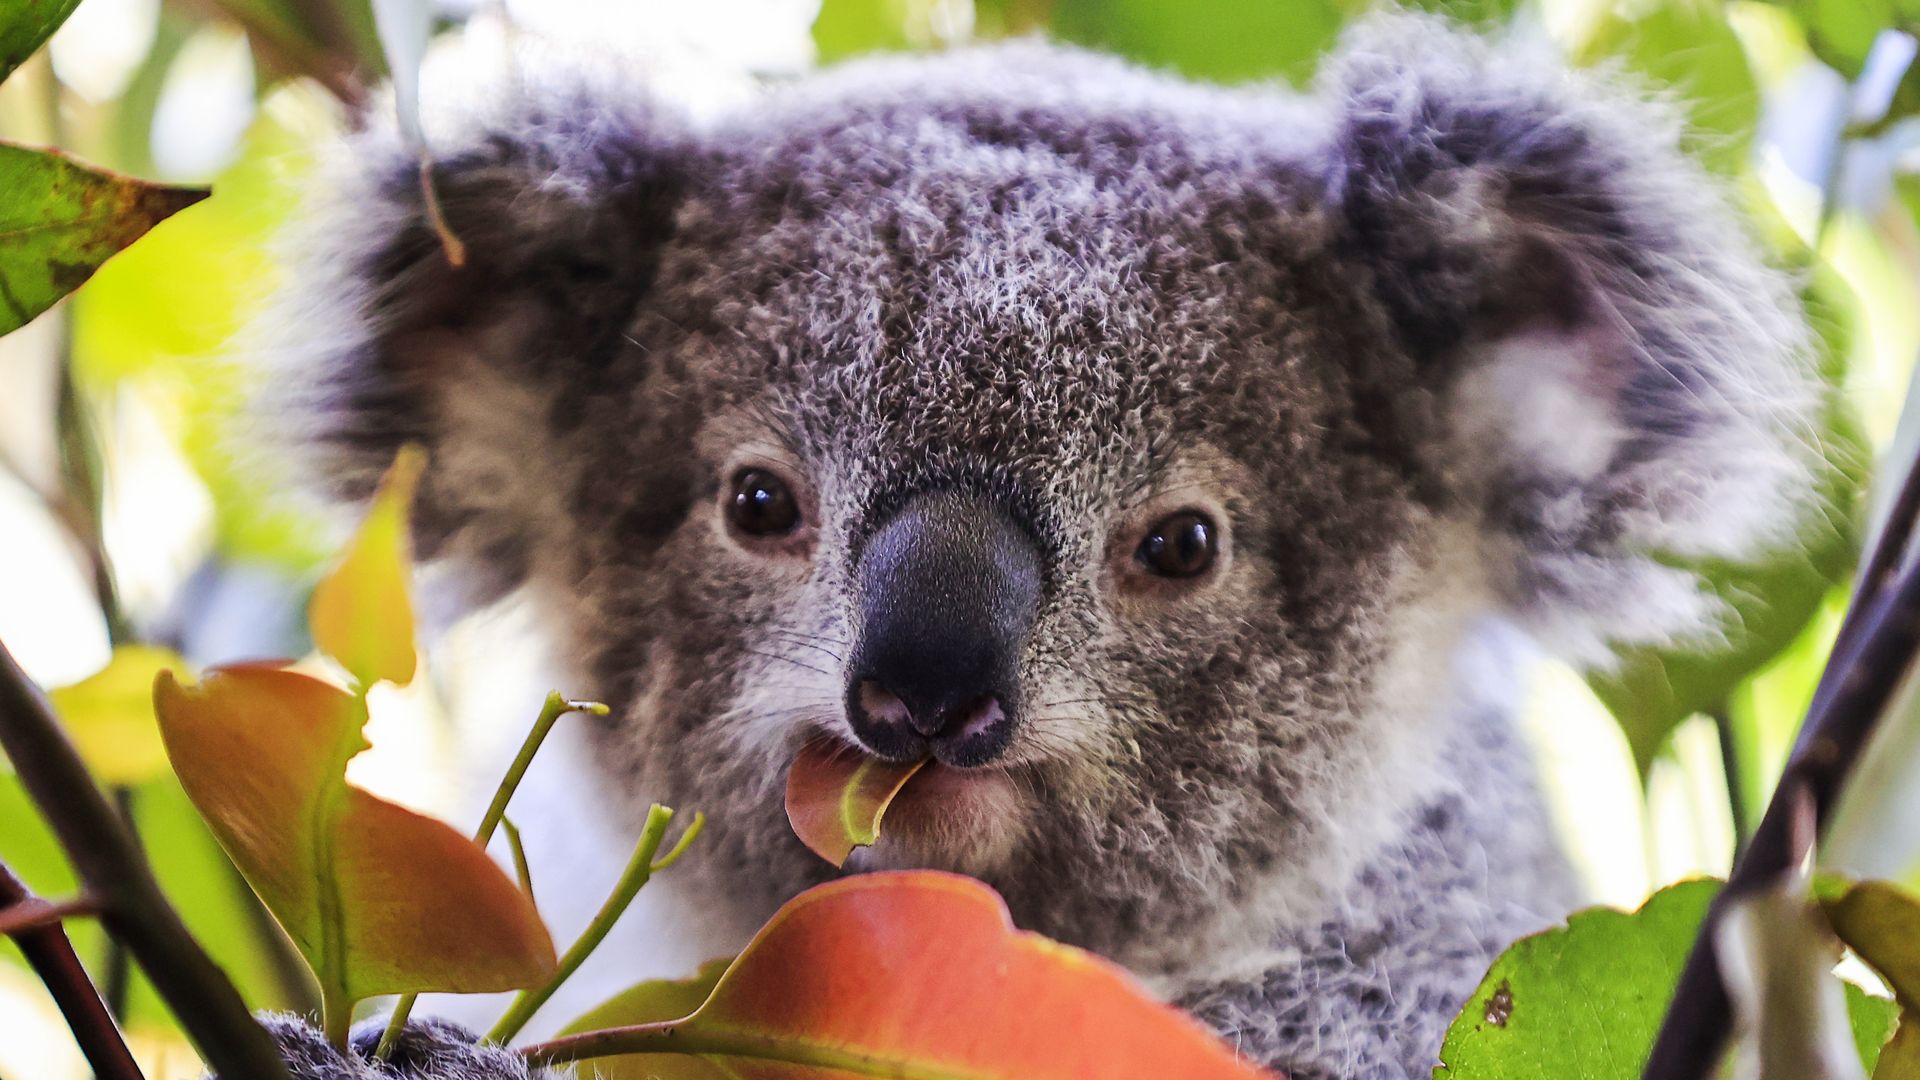 Photo of a koala eating a flower petal 